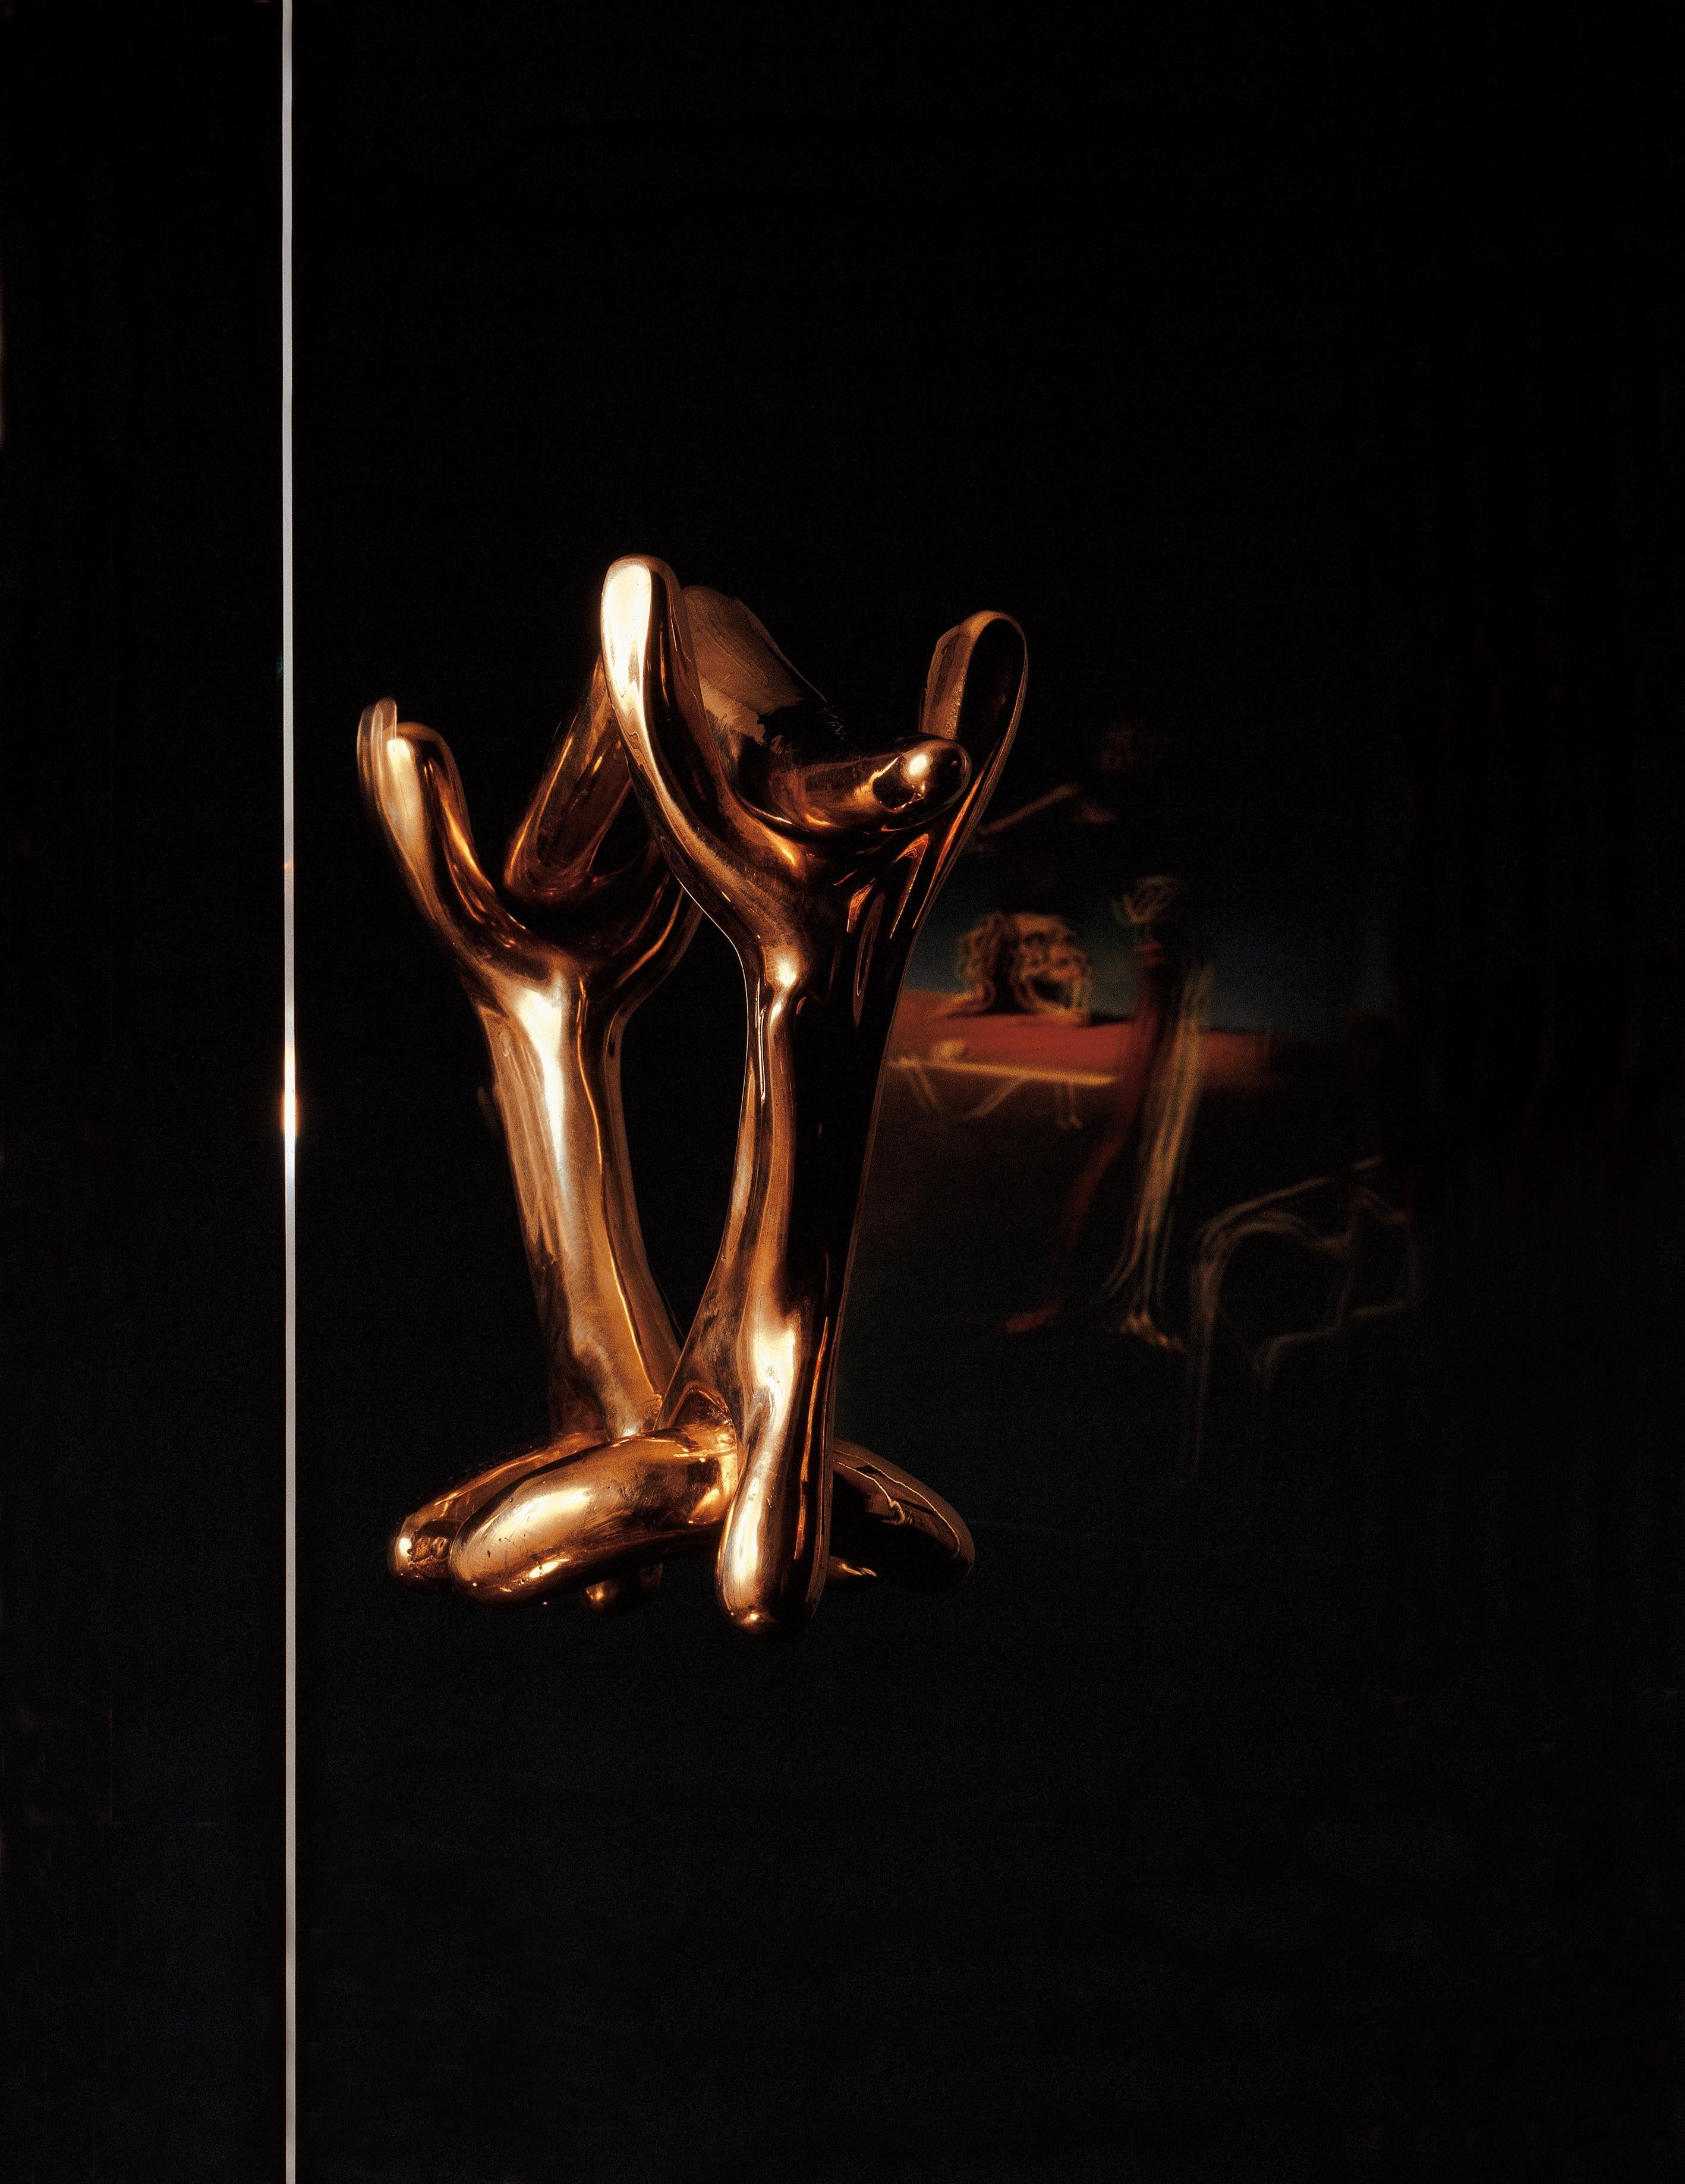 Trois pièces en bronze moulé laqué et poli assemblées.

Dans les années 30, à Paris, Salvador Dalí s'entoure d'un cercle d'amis qui s'intéressent à l'application de l'art à diverses disciplines, au-delà de l'étude de l'art pictural pur. Jean-Michel